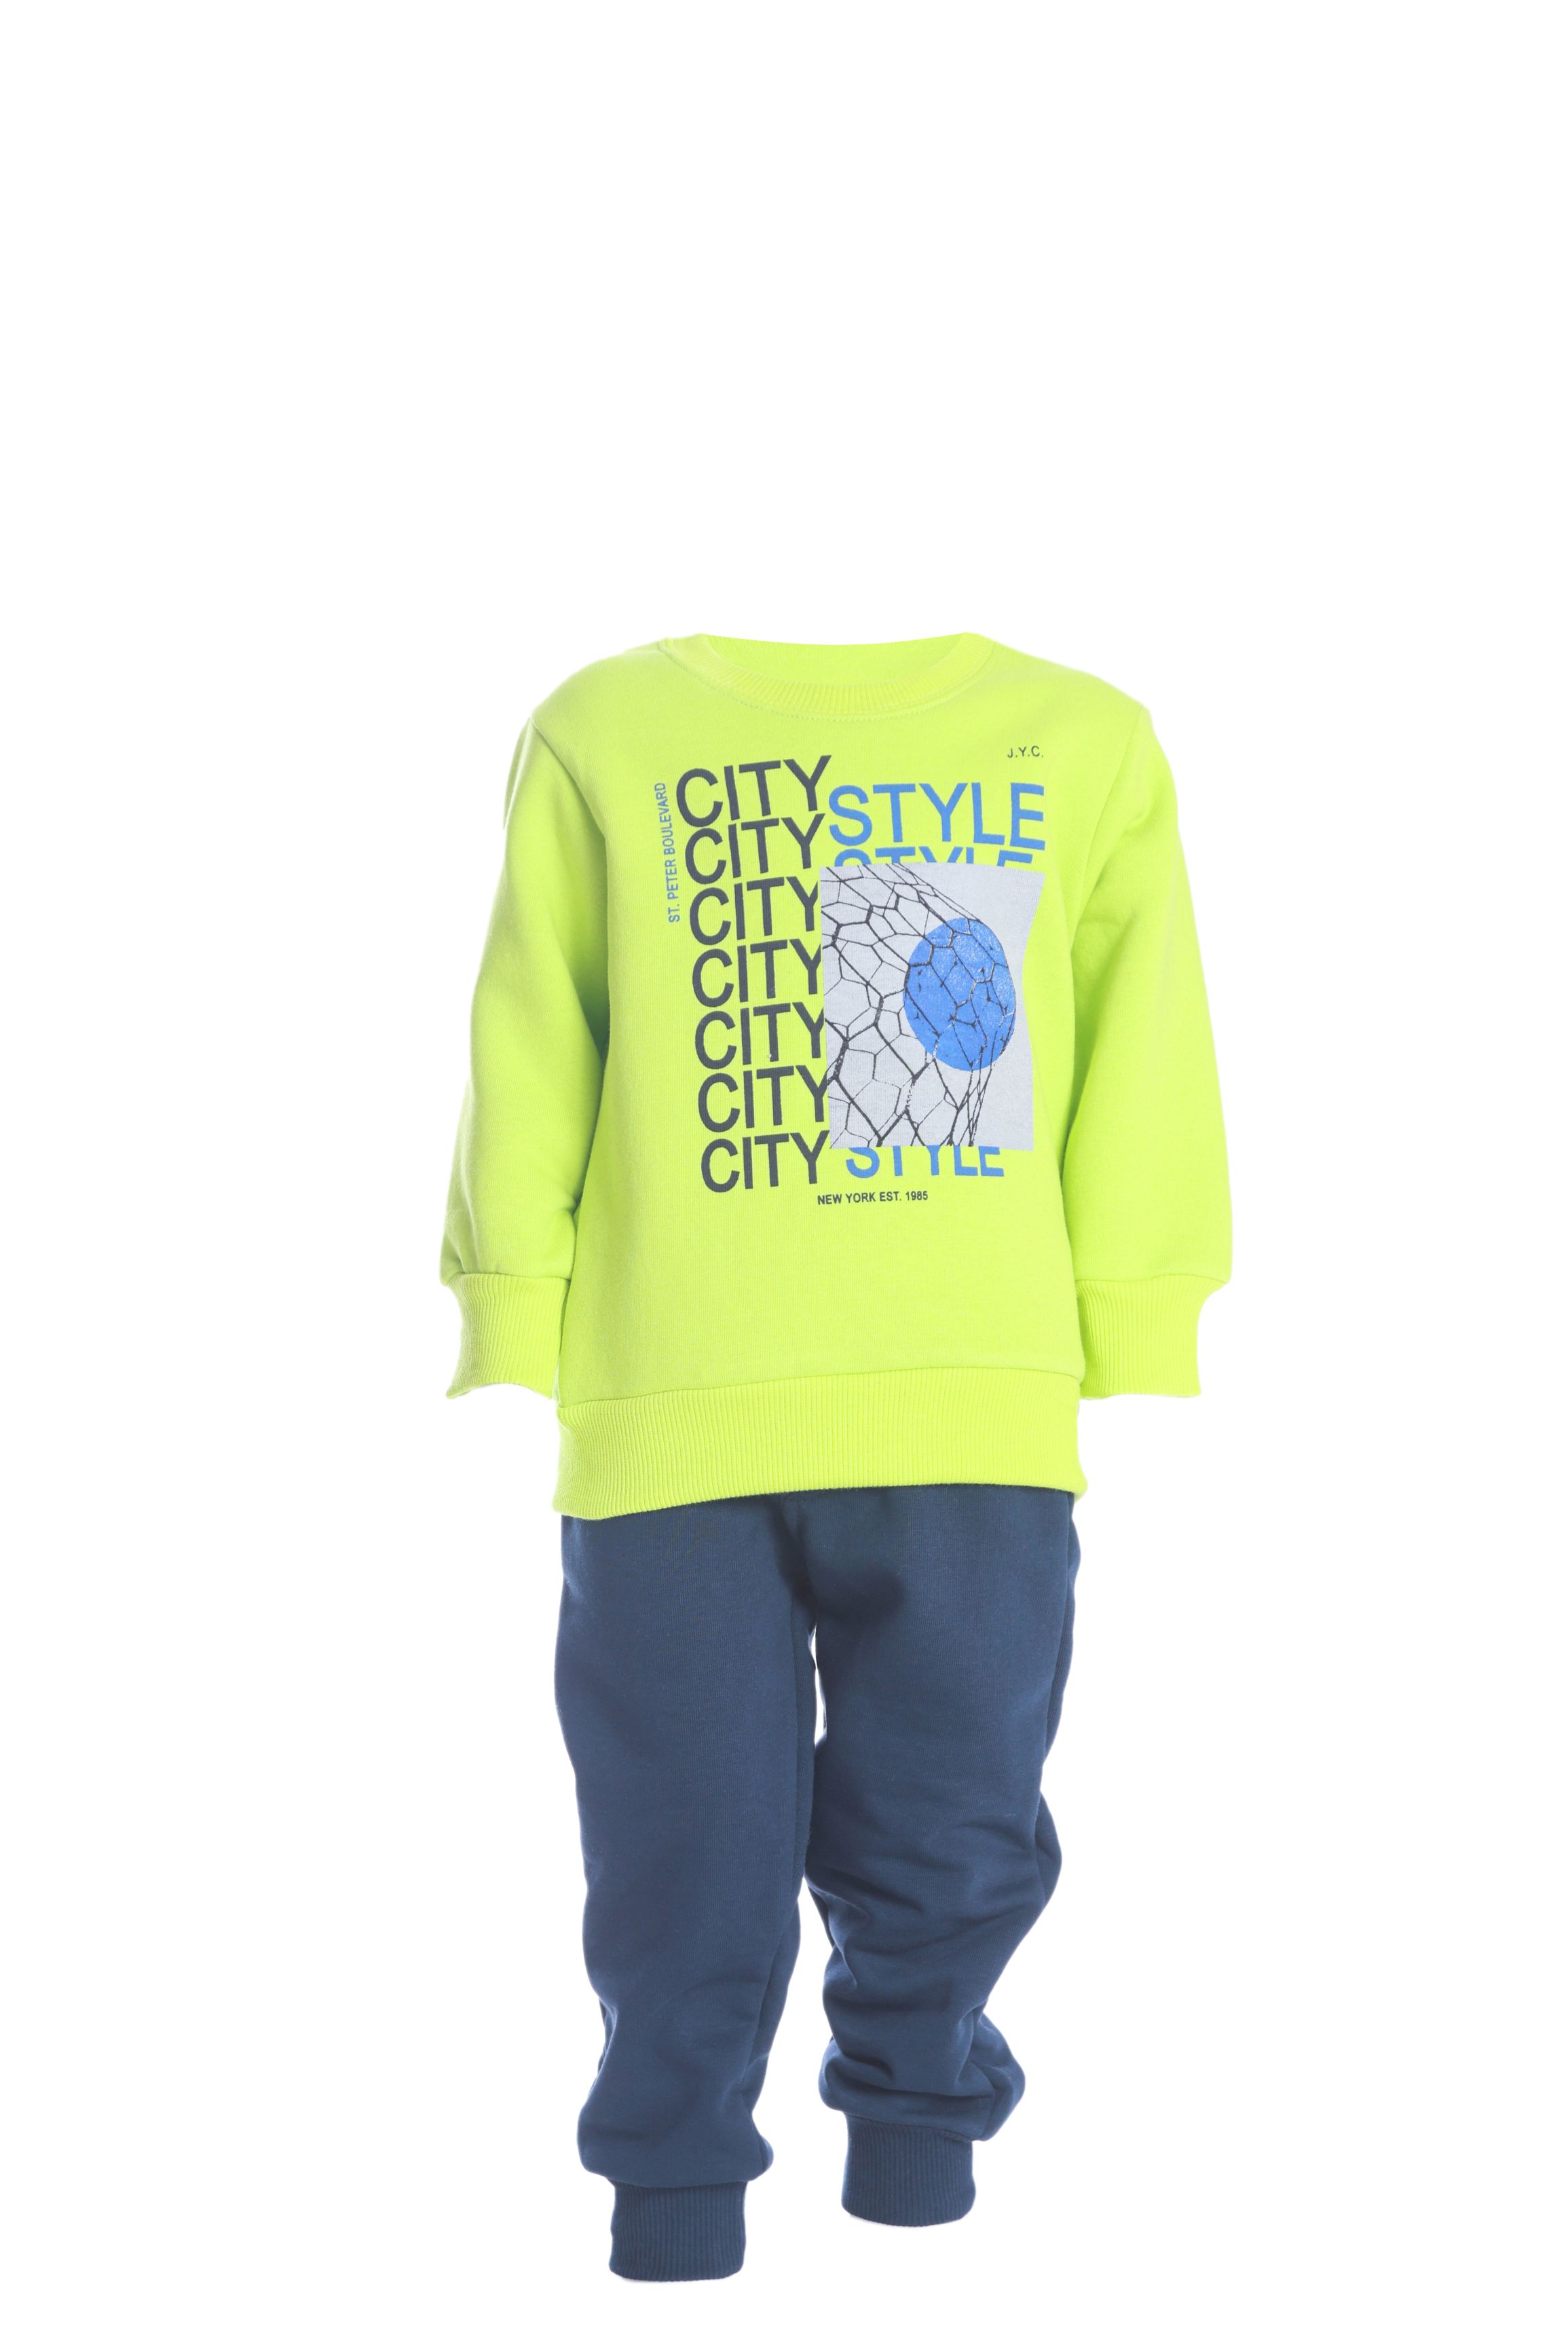 Chlapecká tepláková souprava "CITY STYLE"/Zelená, Neonová Barva: Neonová zelená, Velikost: vel. 3 (98/100 cm)